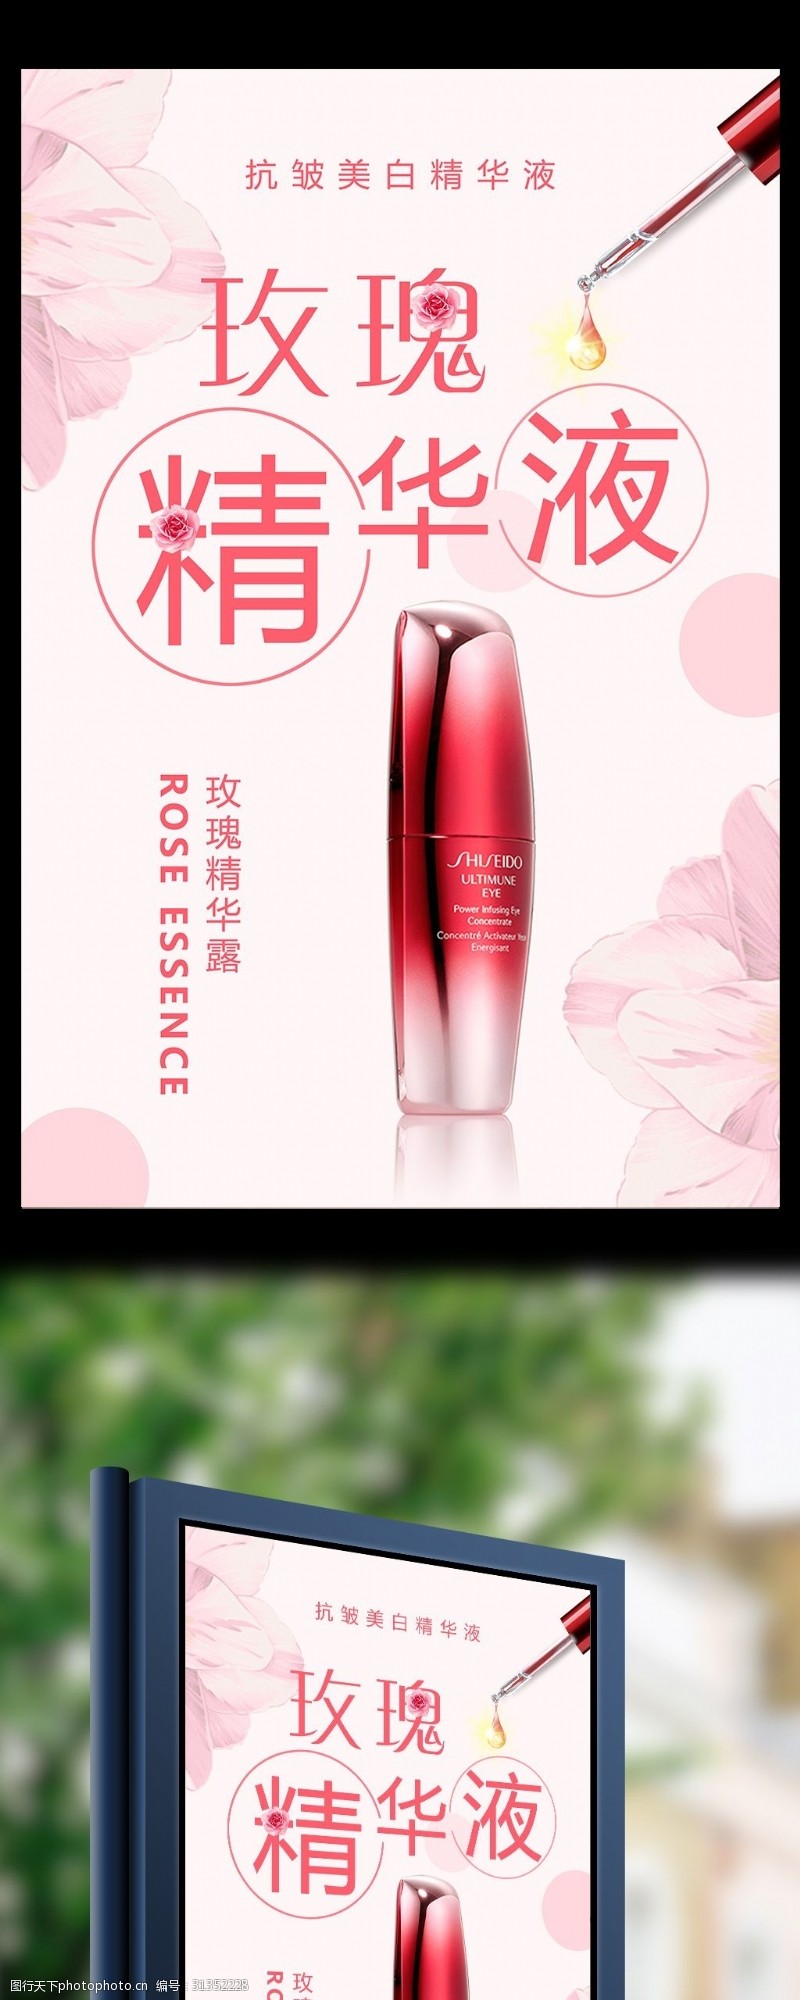 玫瑰花模板下载玫瑰精华液护肤产品宣传海报